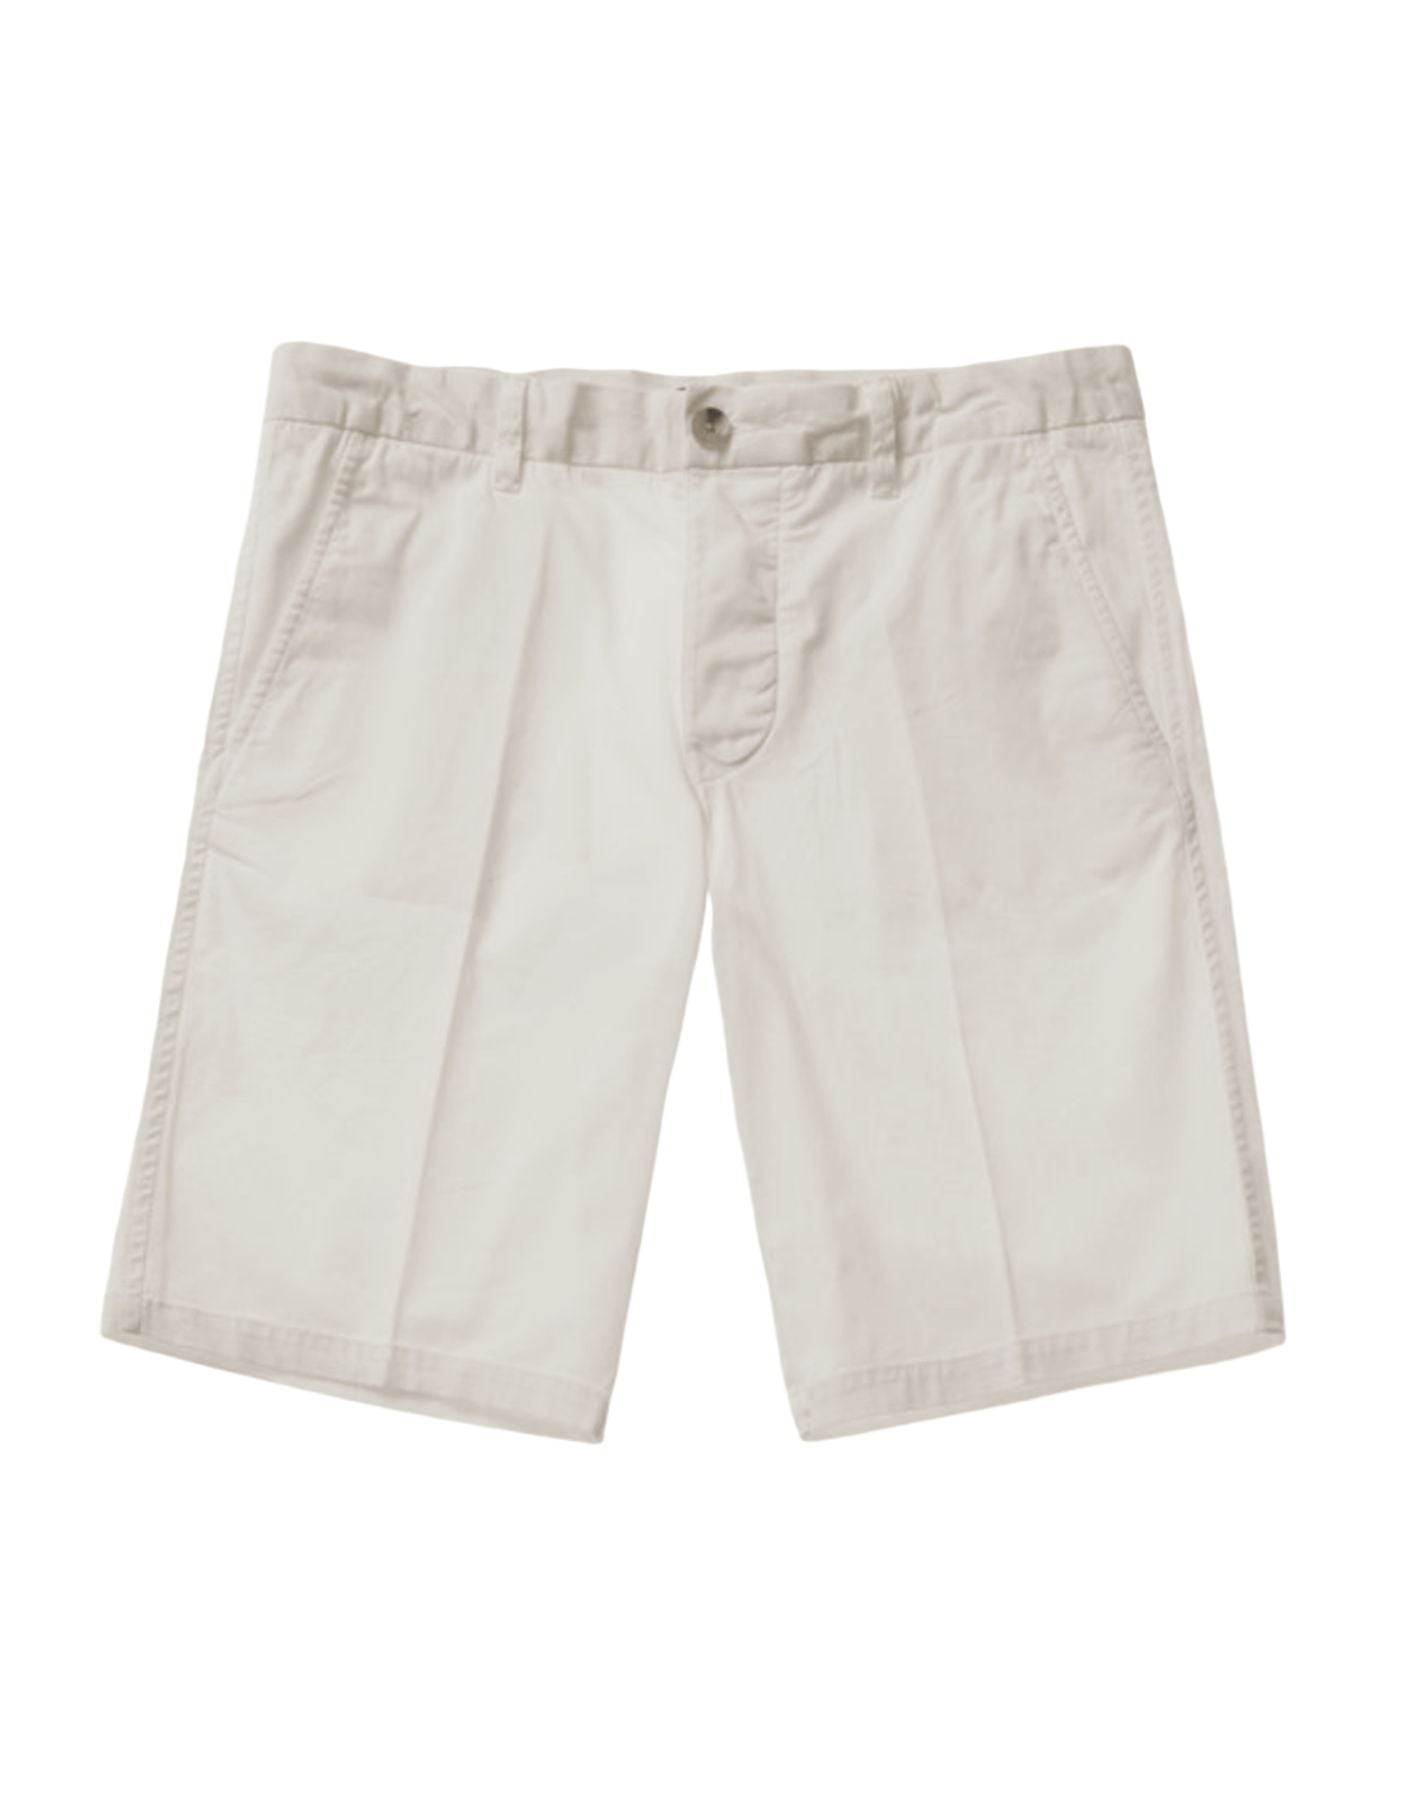 Pantalones cortos para hombre 24SBLUP02406 006855 102 Blauer